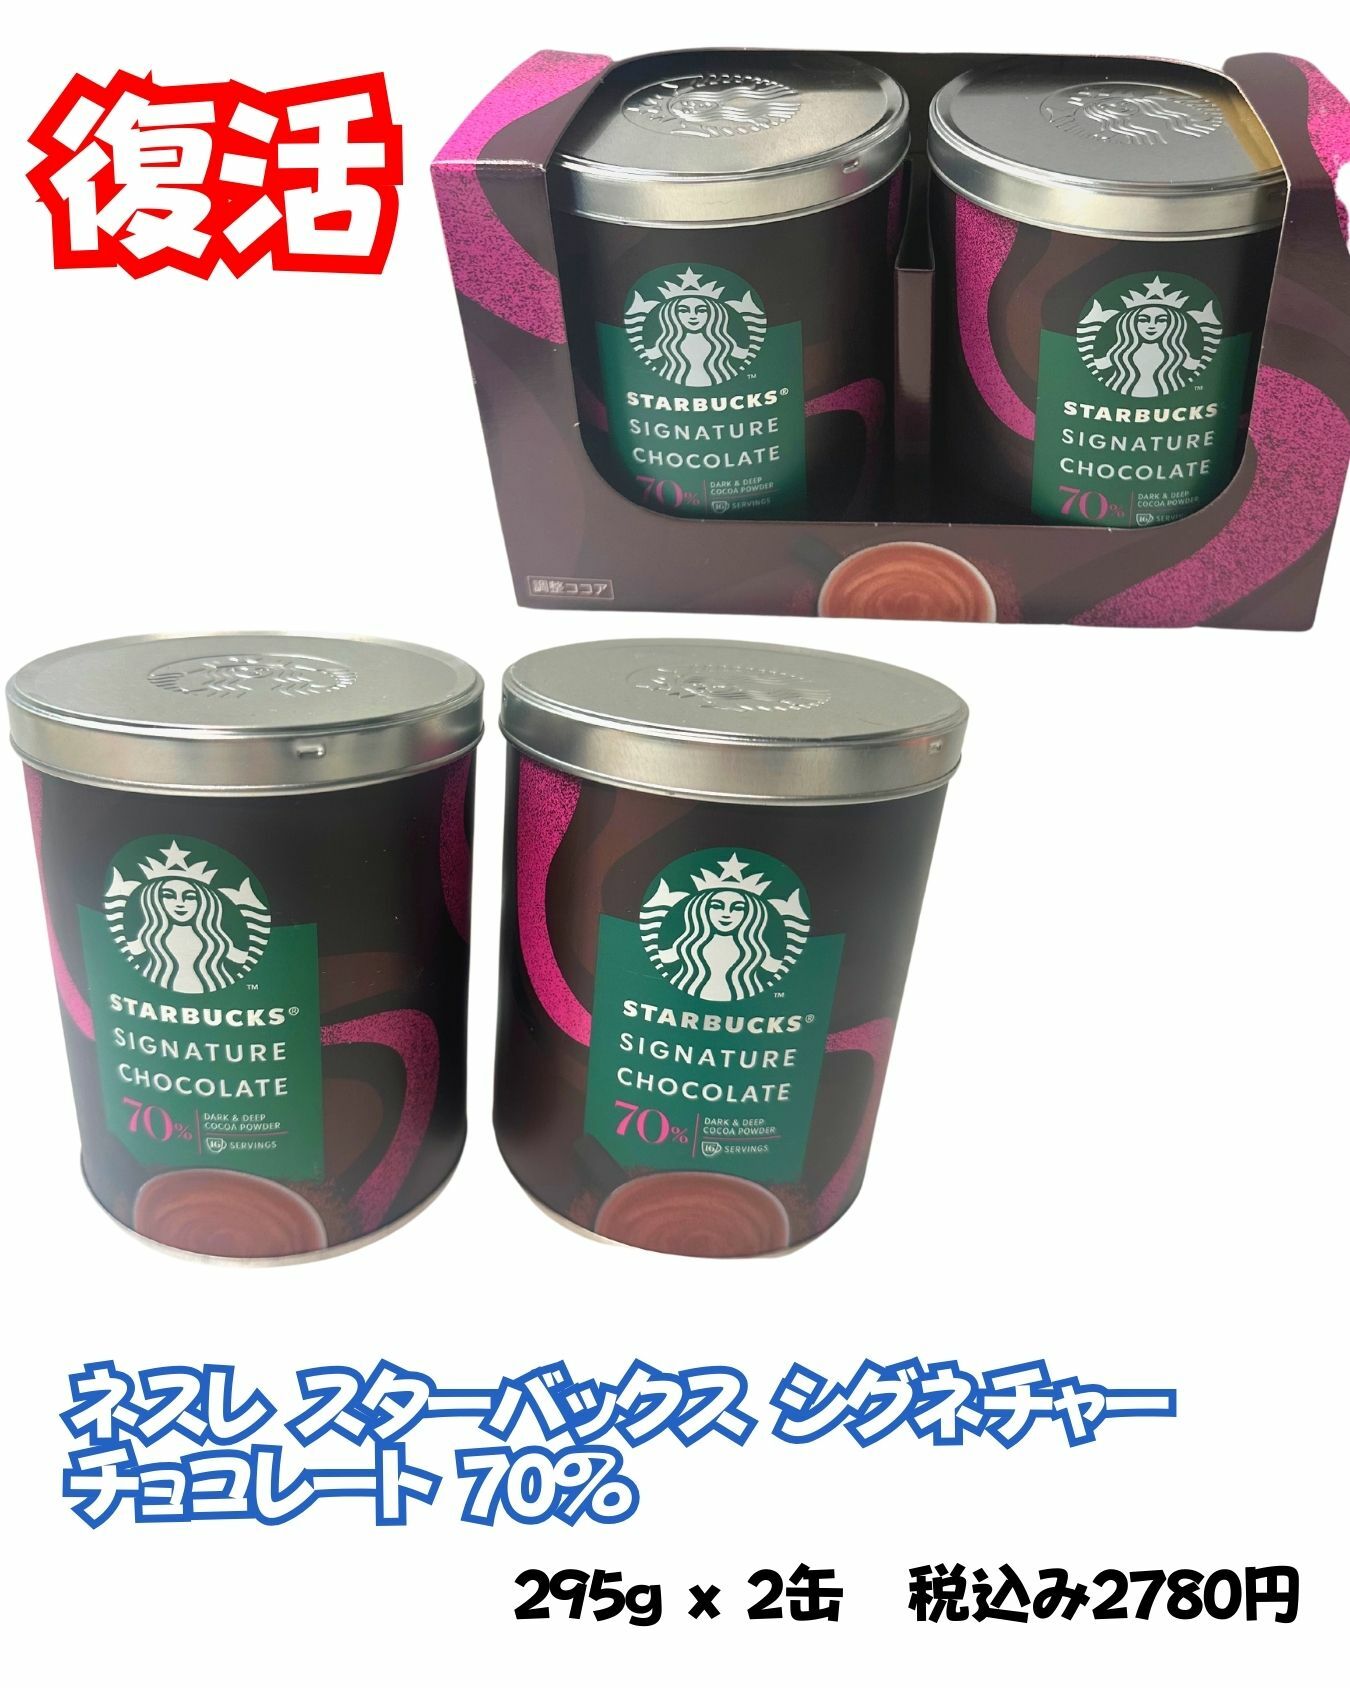 【コストコ】スターバックスのコストコ限定ホットチョコレート缶